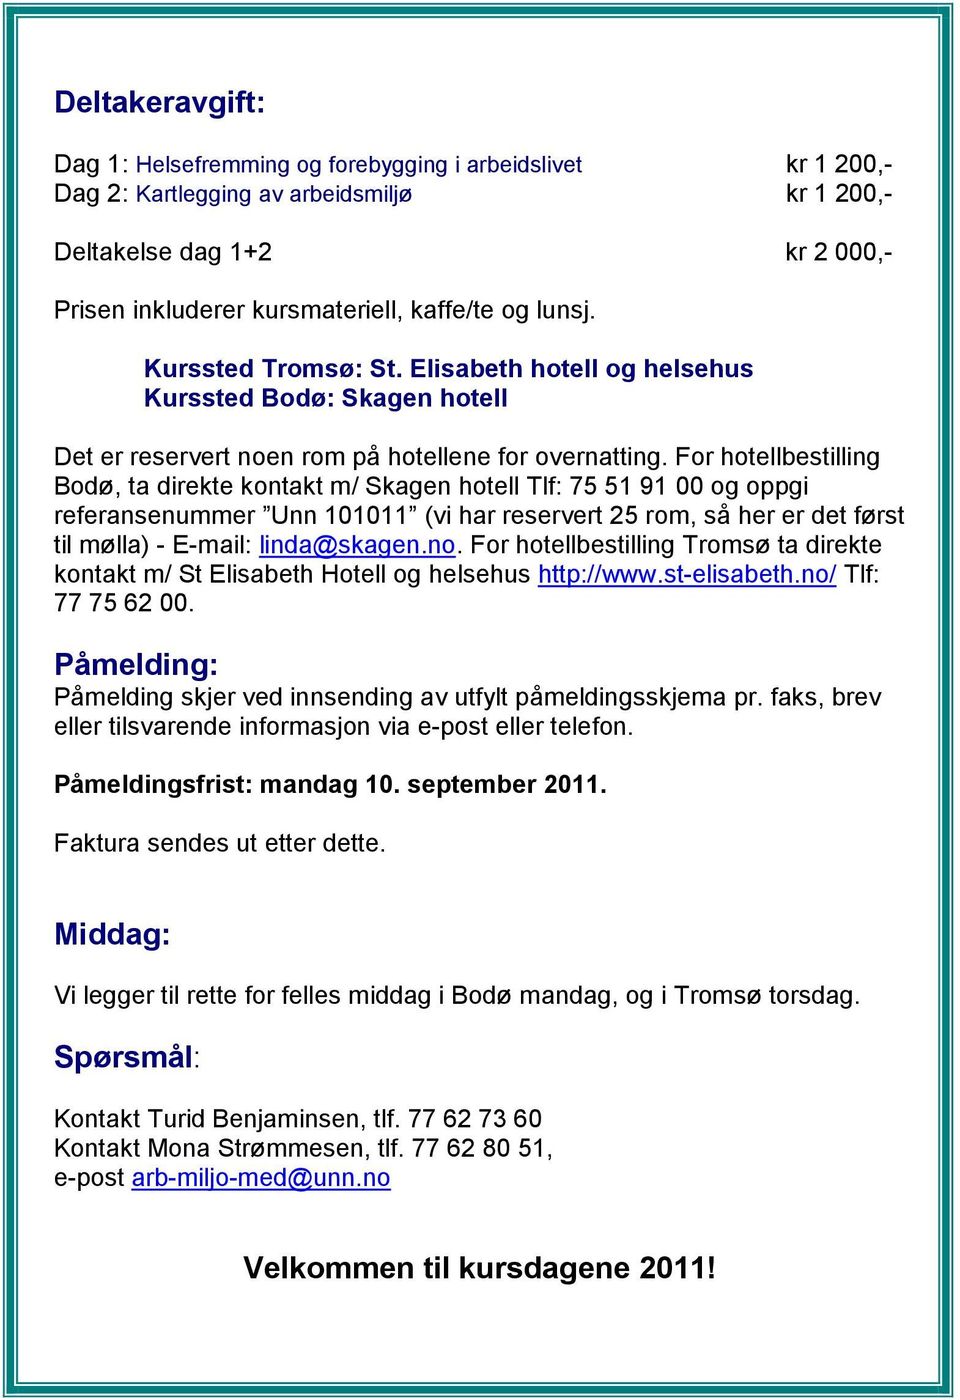 For hotellbestilling Bodø, ta direkte kontakt m/ Skagen hotell Tlf: 75 51 91 00 og oppgi referansenummer Unn 101011 (vi har reservert 25 rom, så her er det først til mølla) - E-mail: linda@skagen.no.